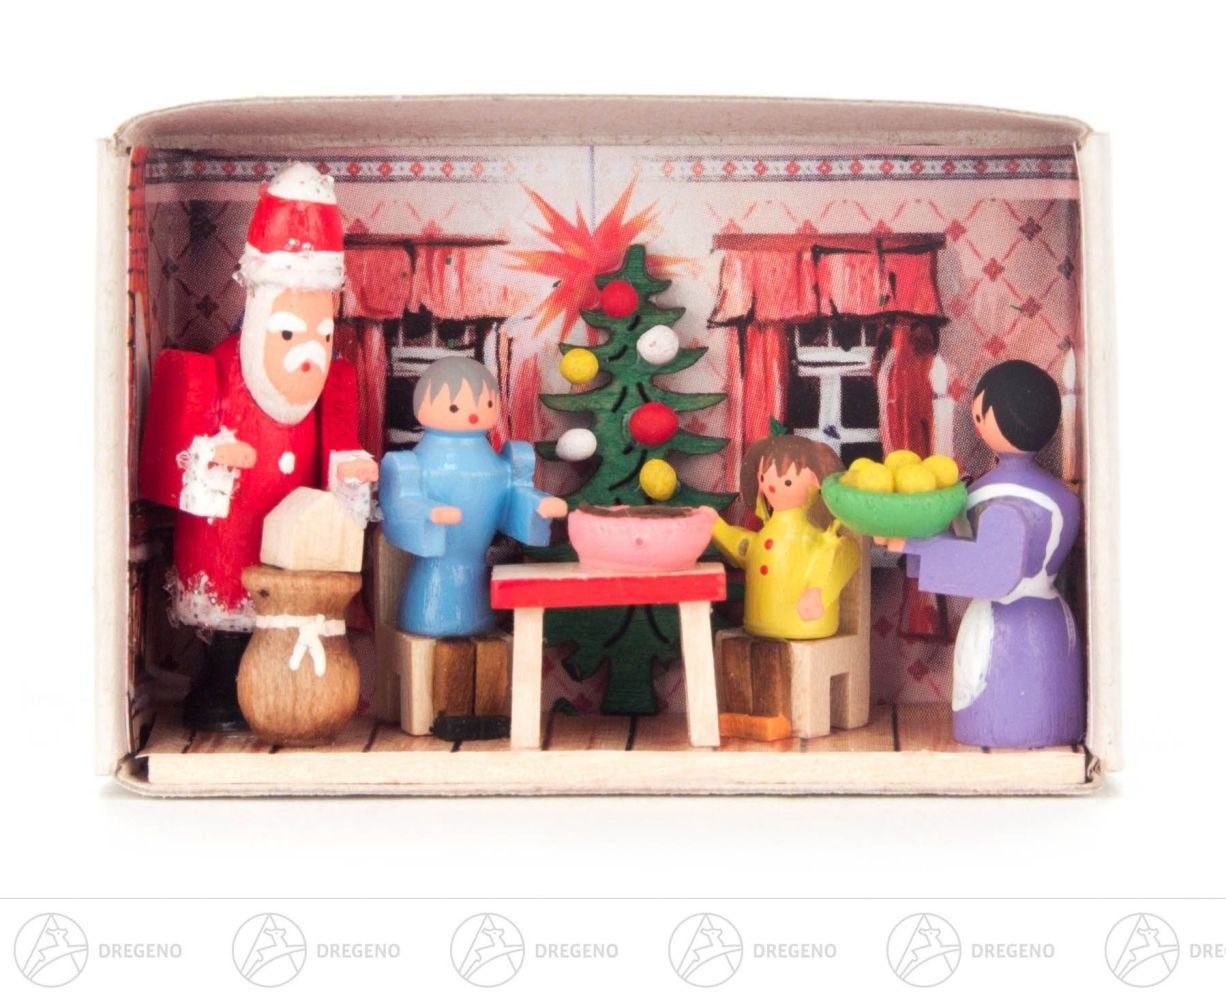 Dregeno Erzgebirge Weihnachtsfigur Miniatur Zündholzschachtel Setzkasten Breite zu Höh, bei Hause uns Weihnachten x für